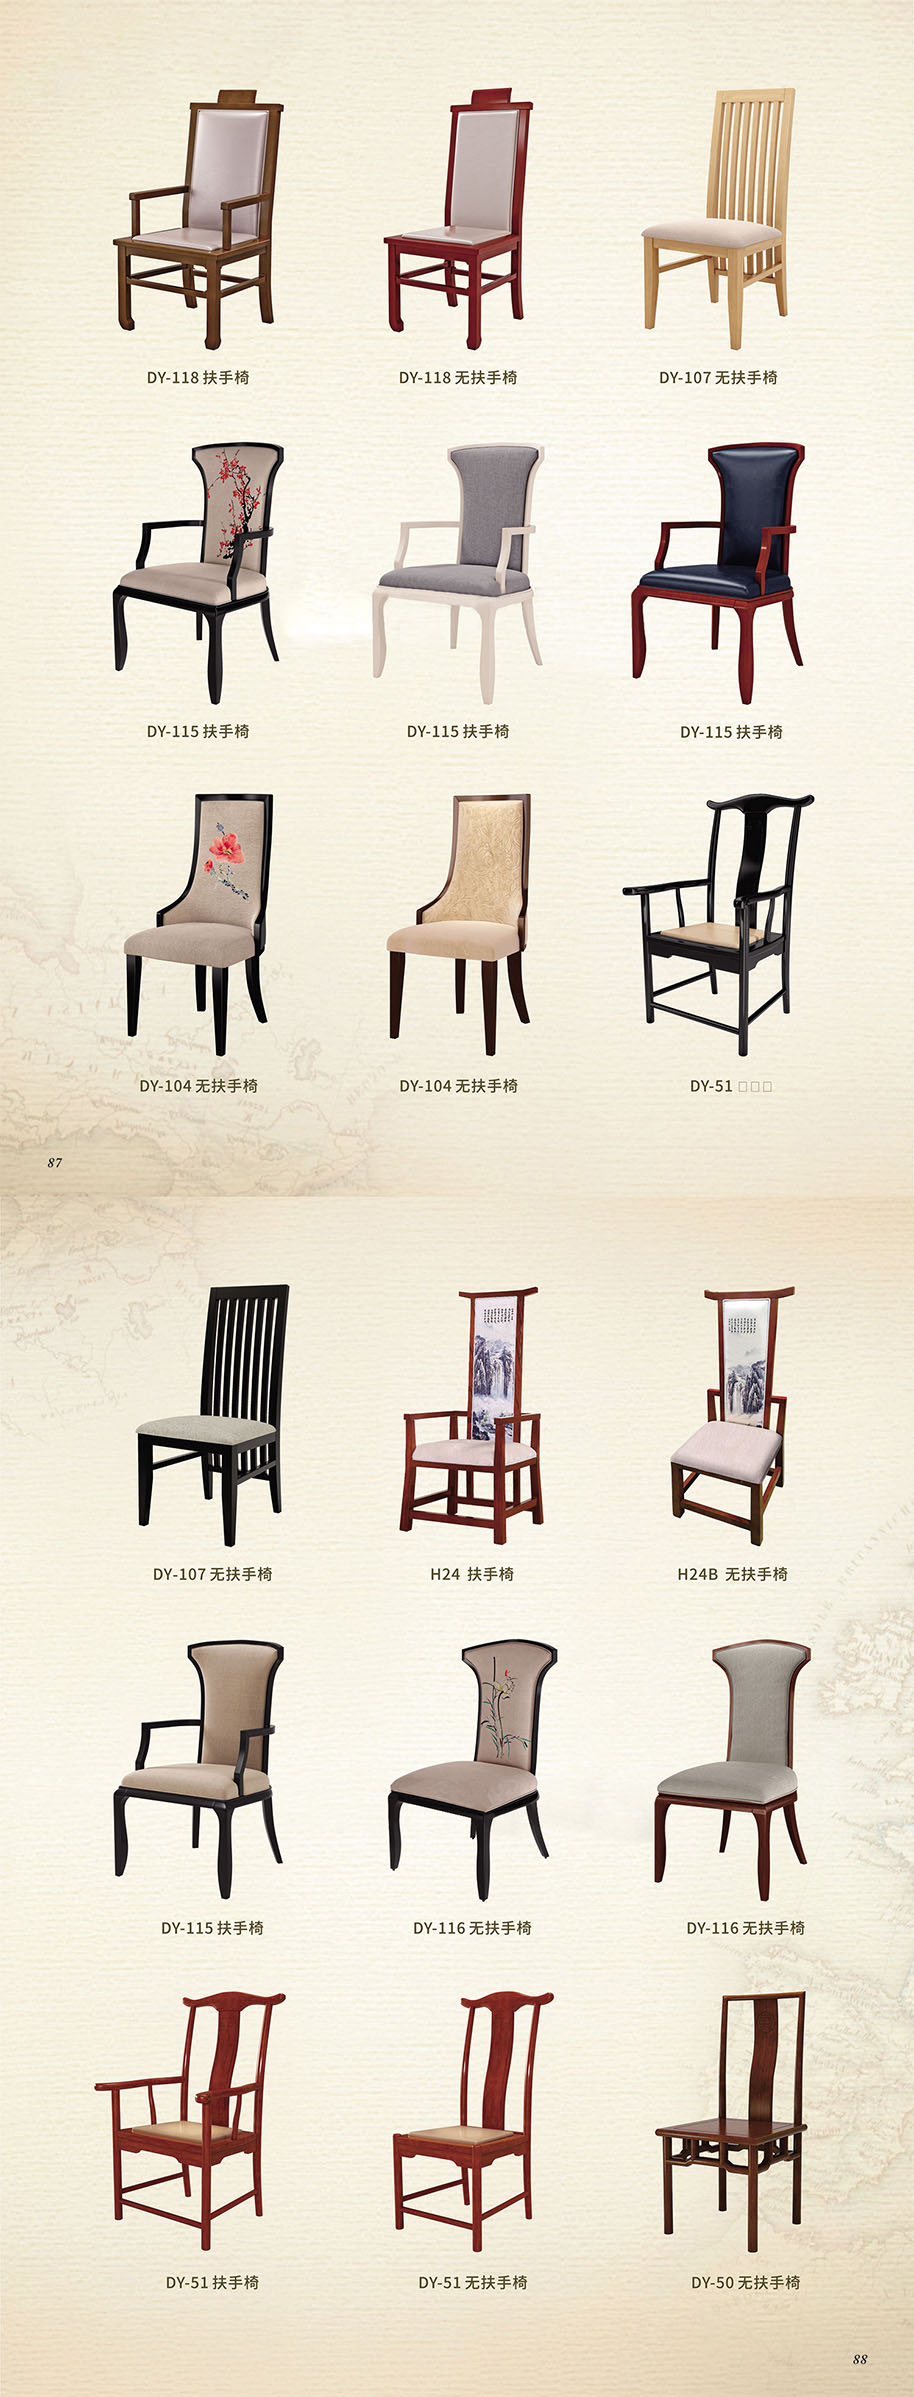 中式餐厅实木餐椅